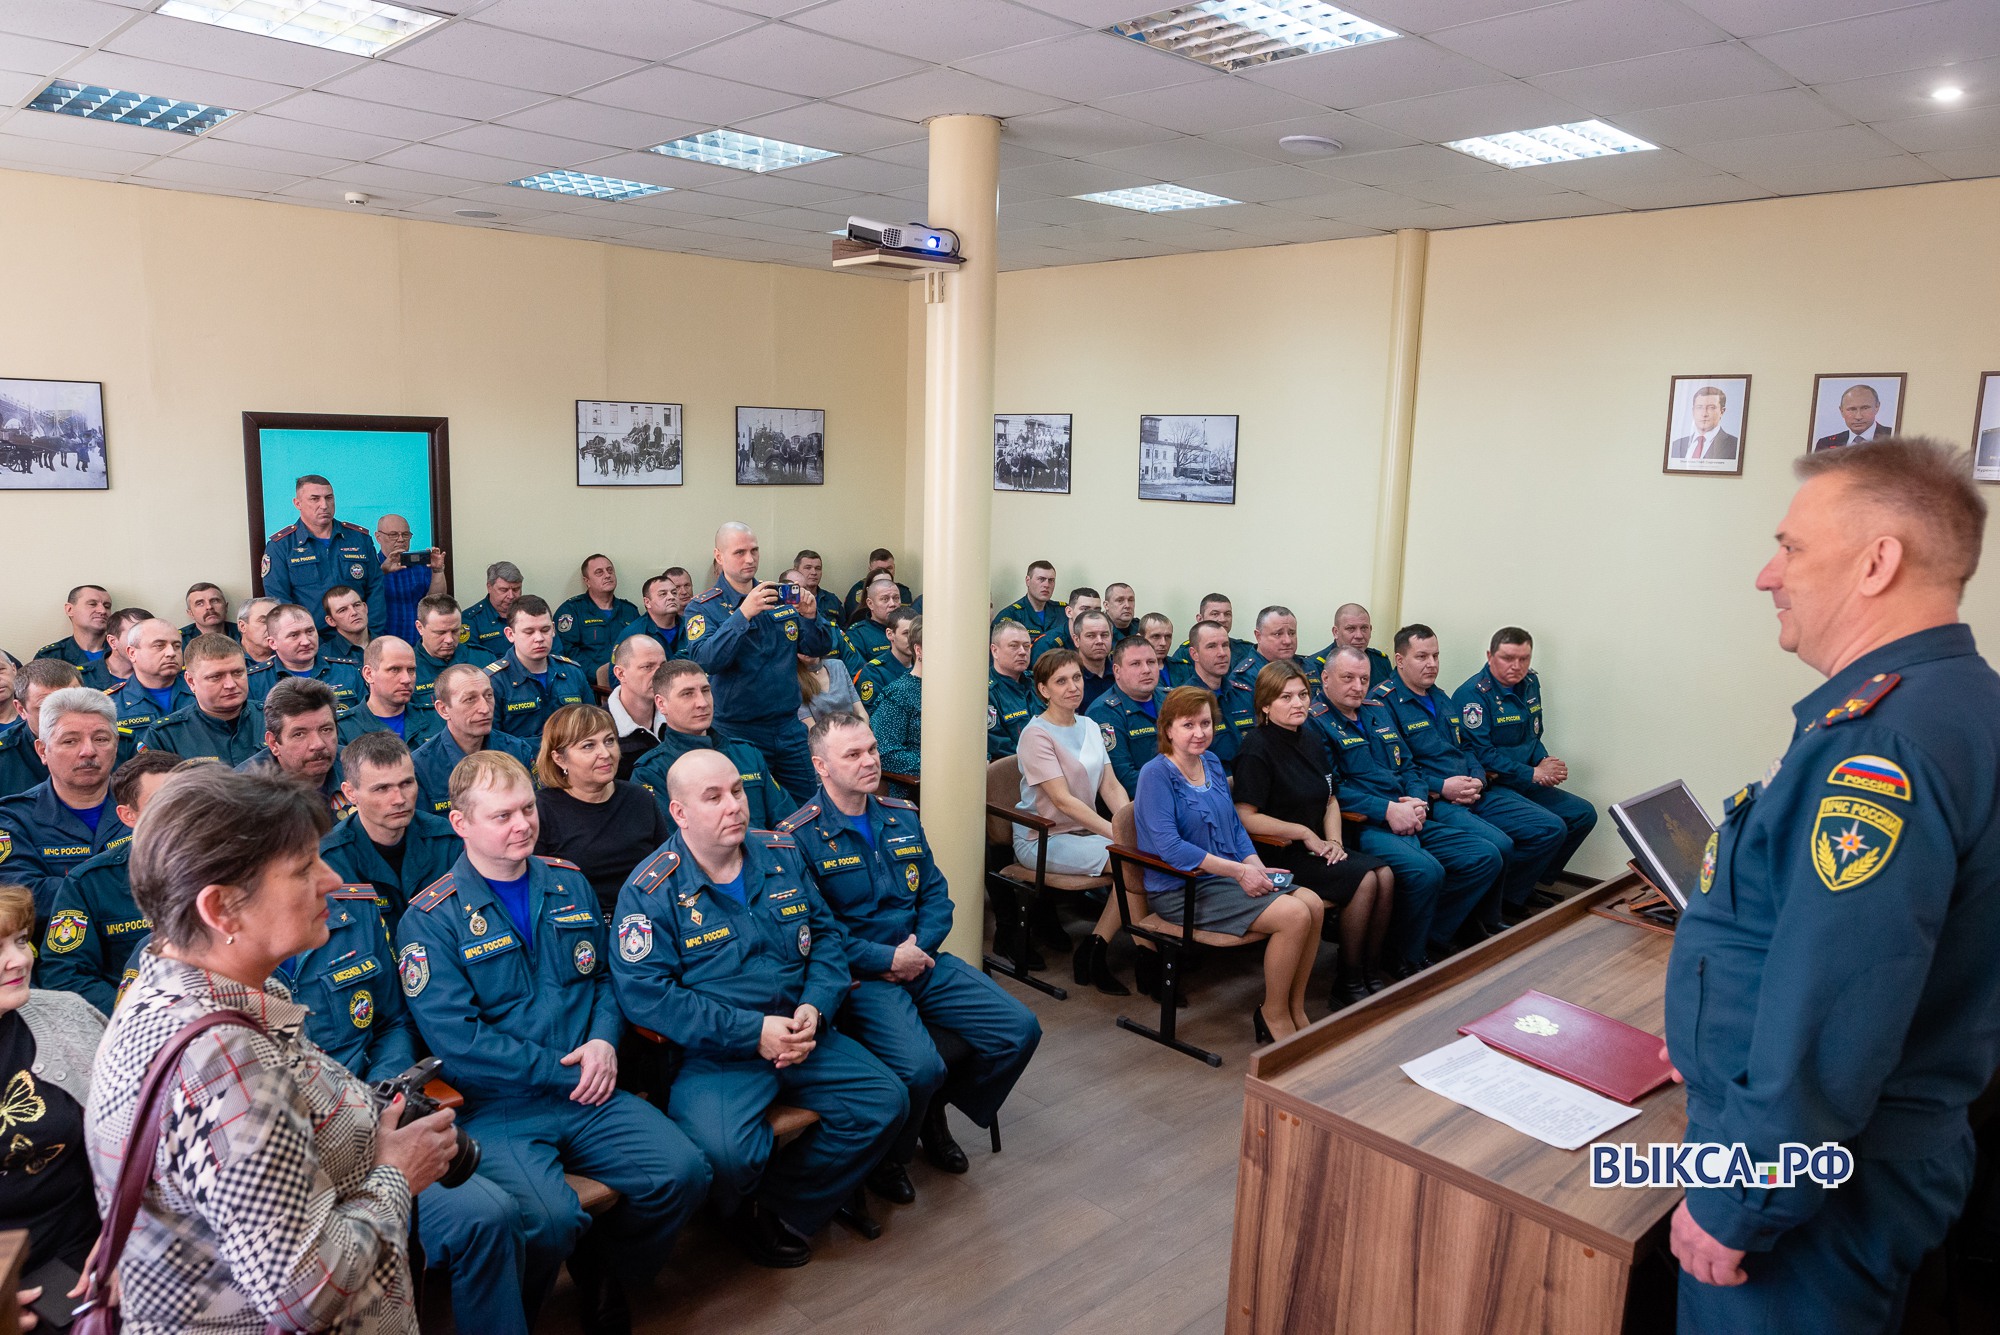 Начальника пожарной части Дмитрия Зюзина торжественно проводили на пенсию 📸